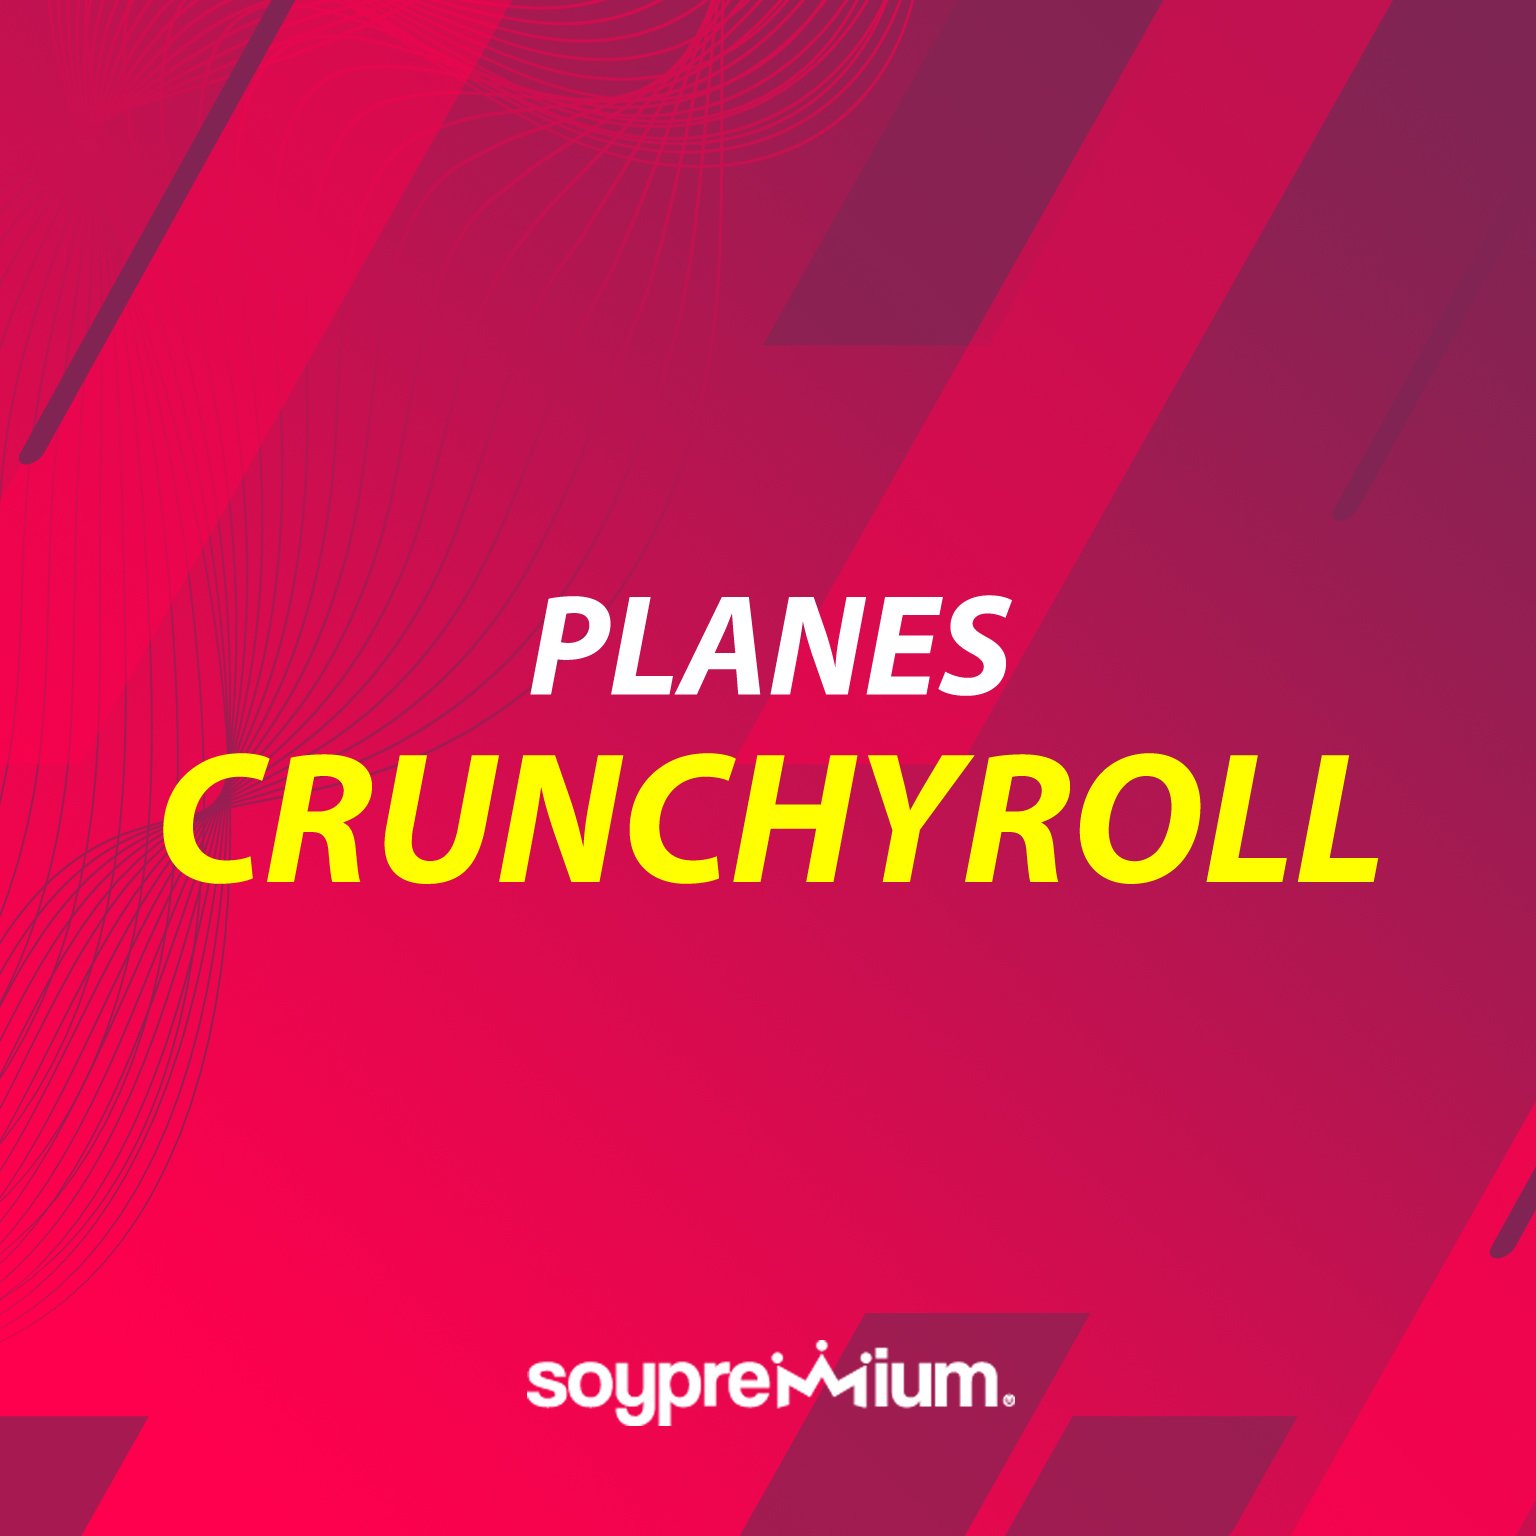 Planes Crunchyroll